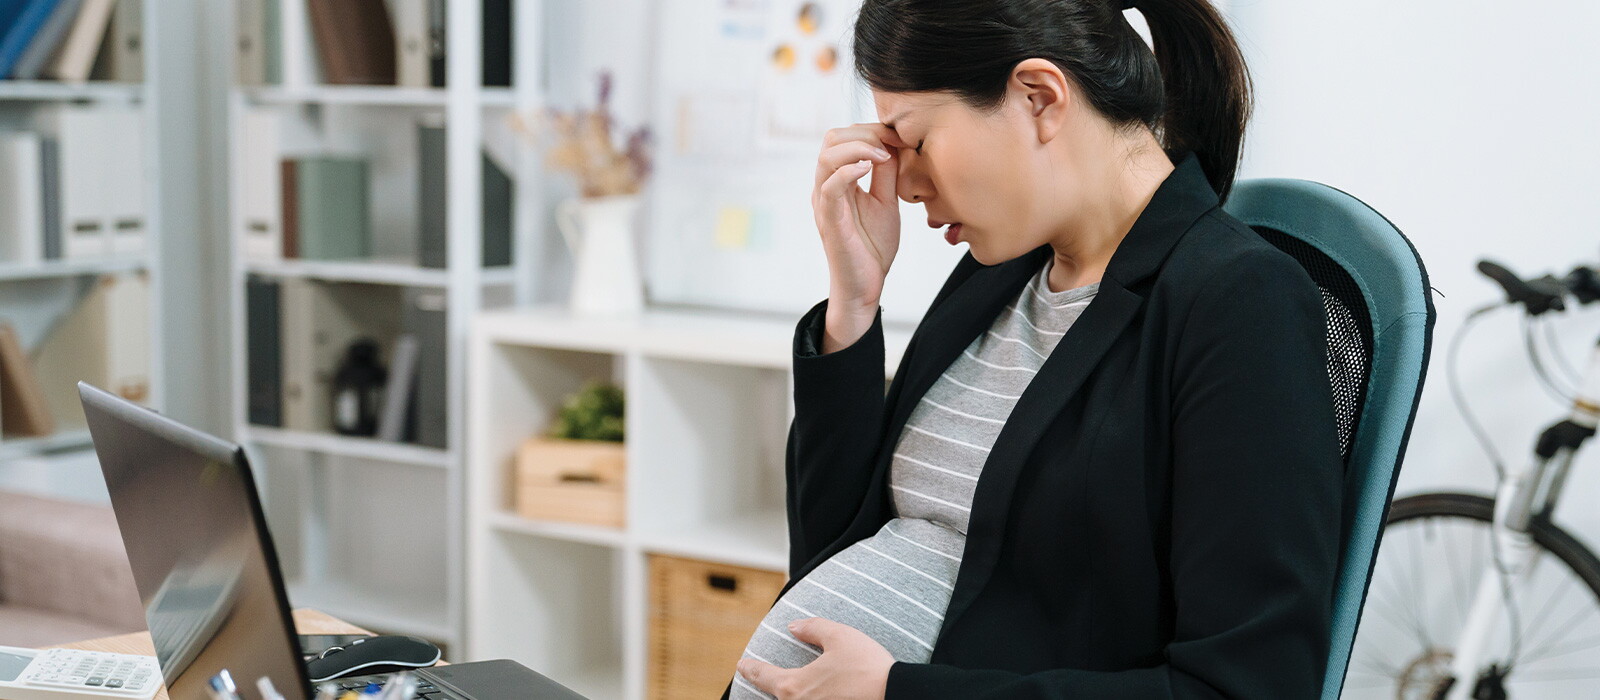 帶著懷孕的身體去上班真的很疲累，是否應該吃多一點以補充能量？